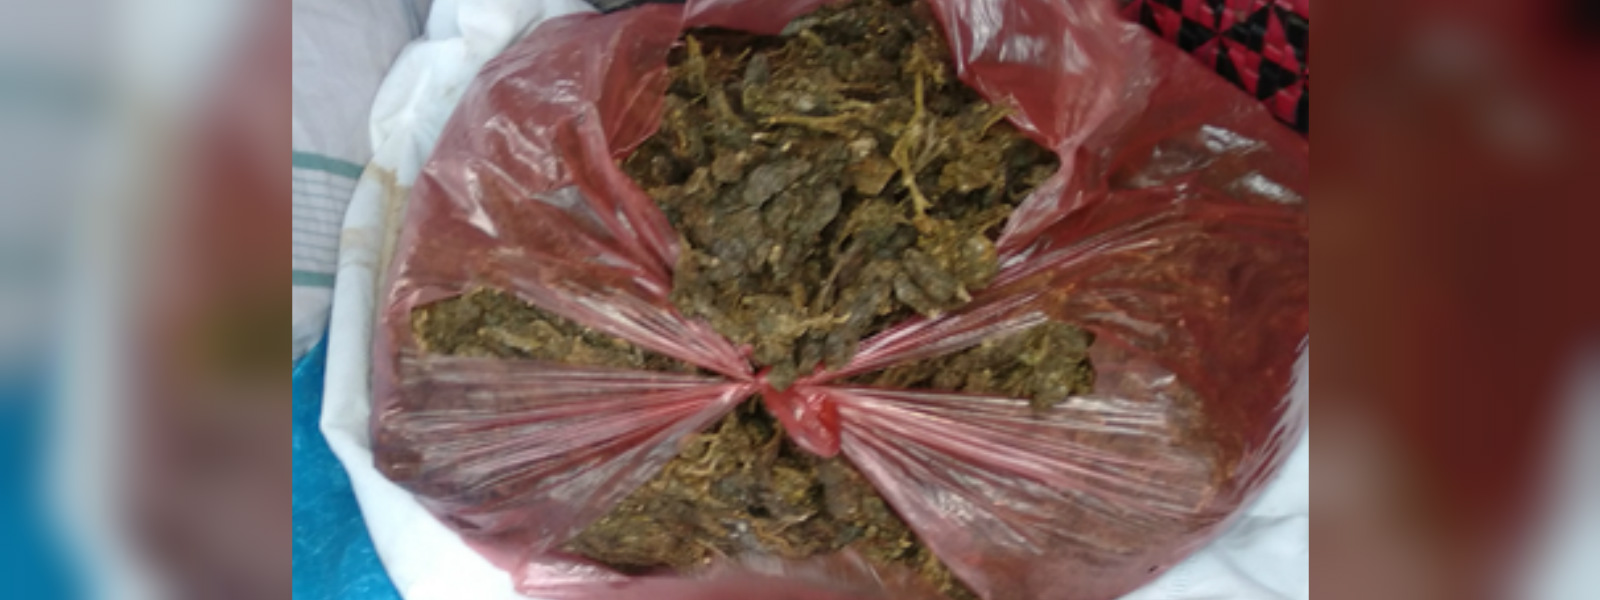 225 kilos of KG seized in Mannar and Medawachchiya